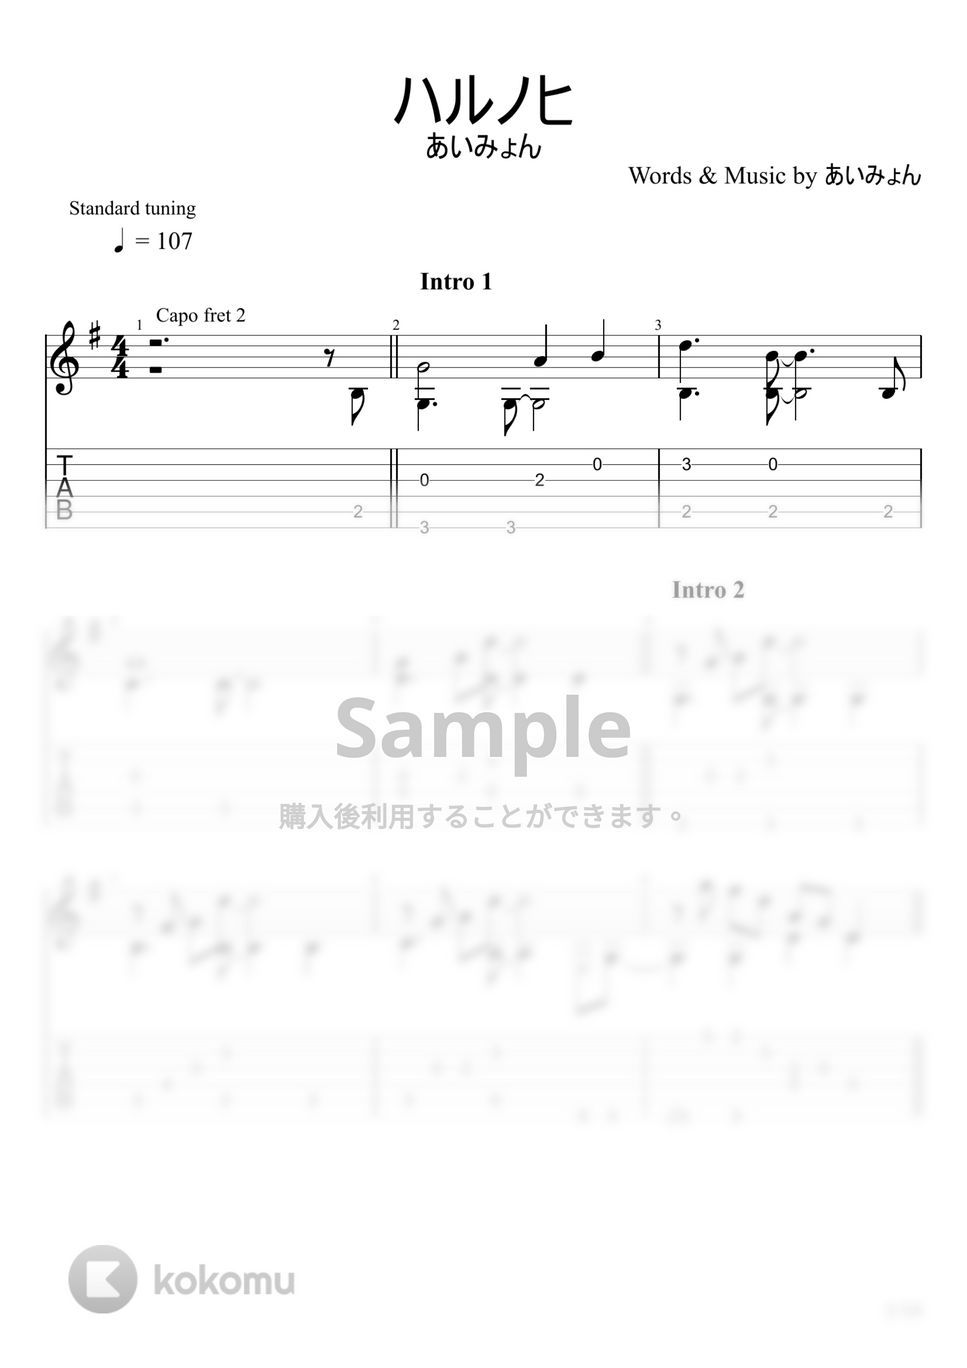 あいみょん - ハルノヒ (ソロギター) by u3danchou